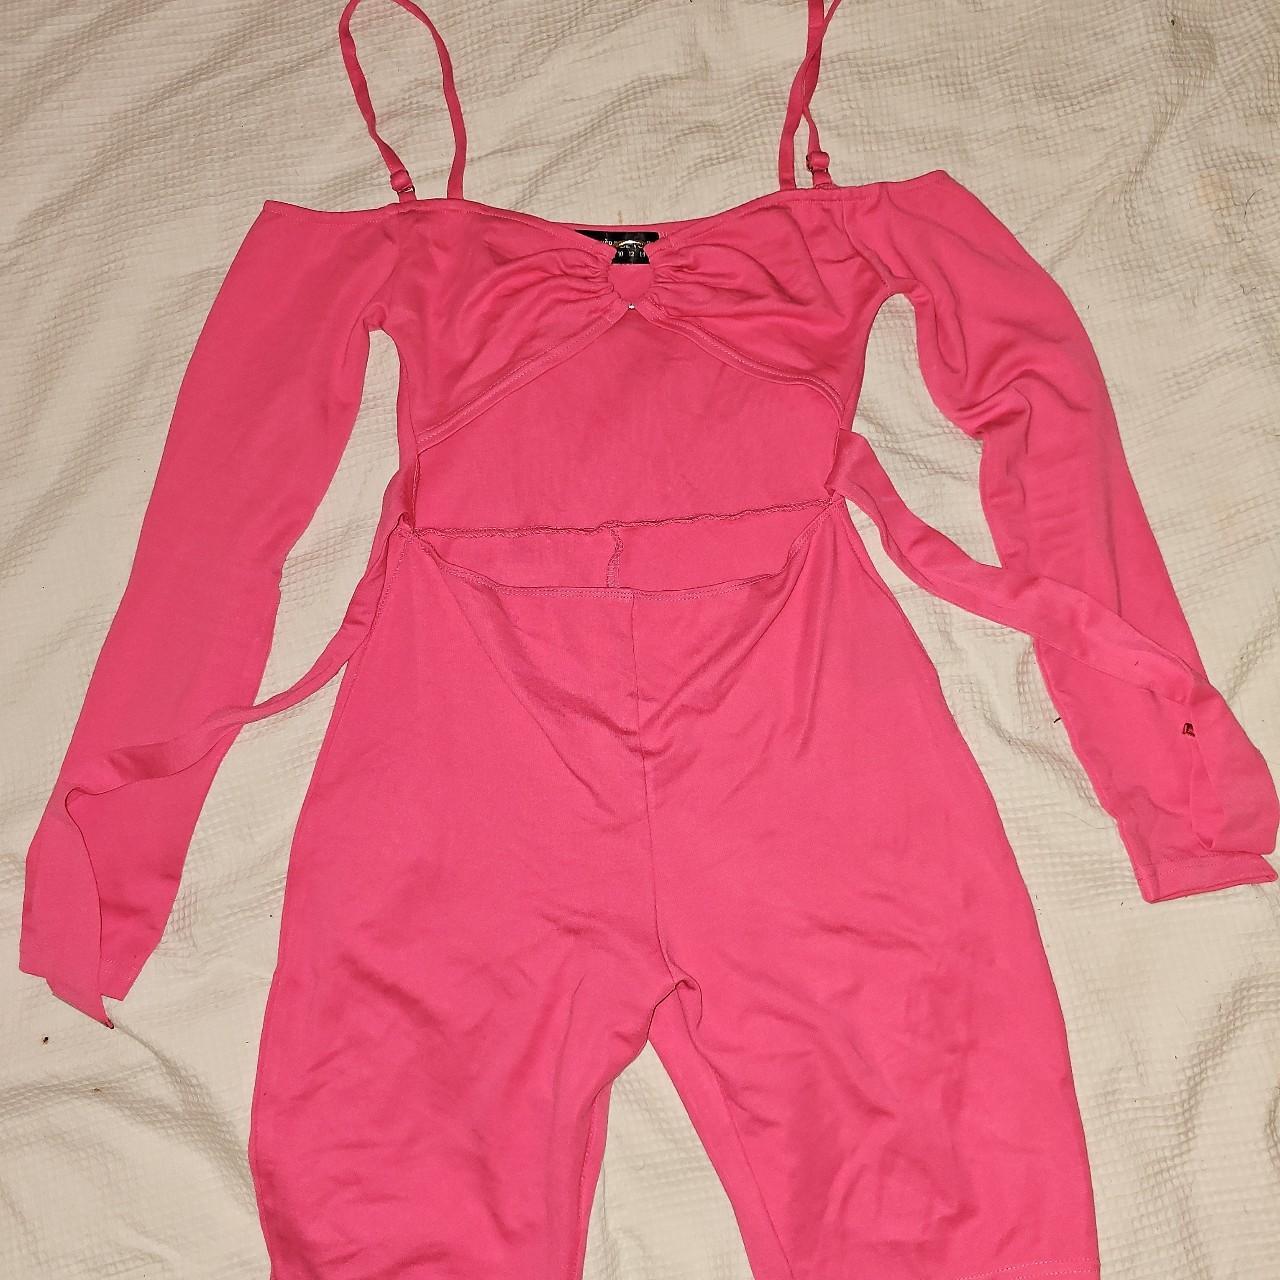 Barbie Pink shorts Jumpsuit - Maniere De Voir On... - Depop